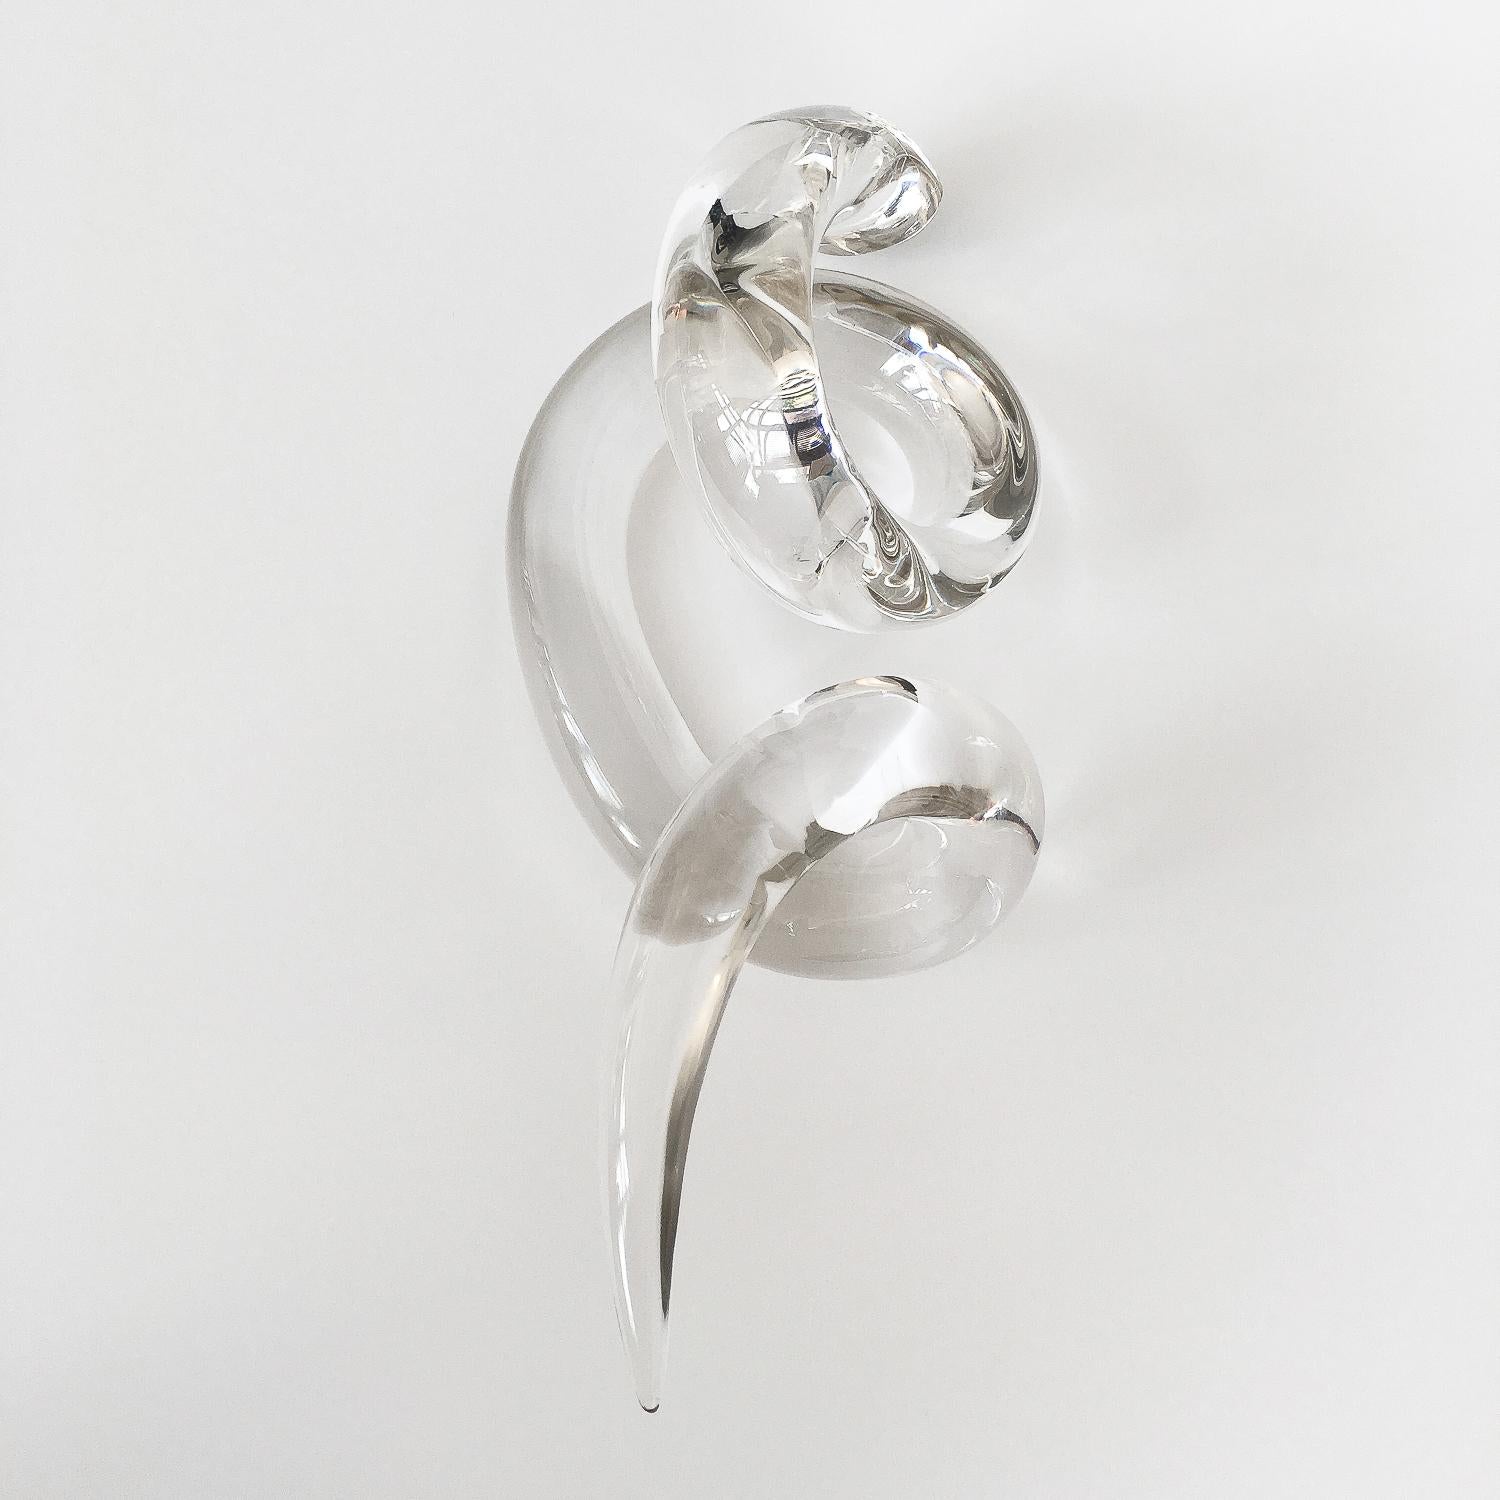 Abstract Art Glass Twist Knot Sculpture 2